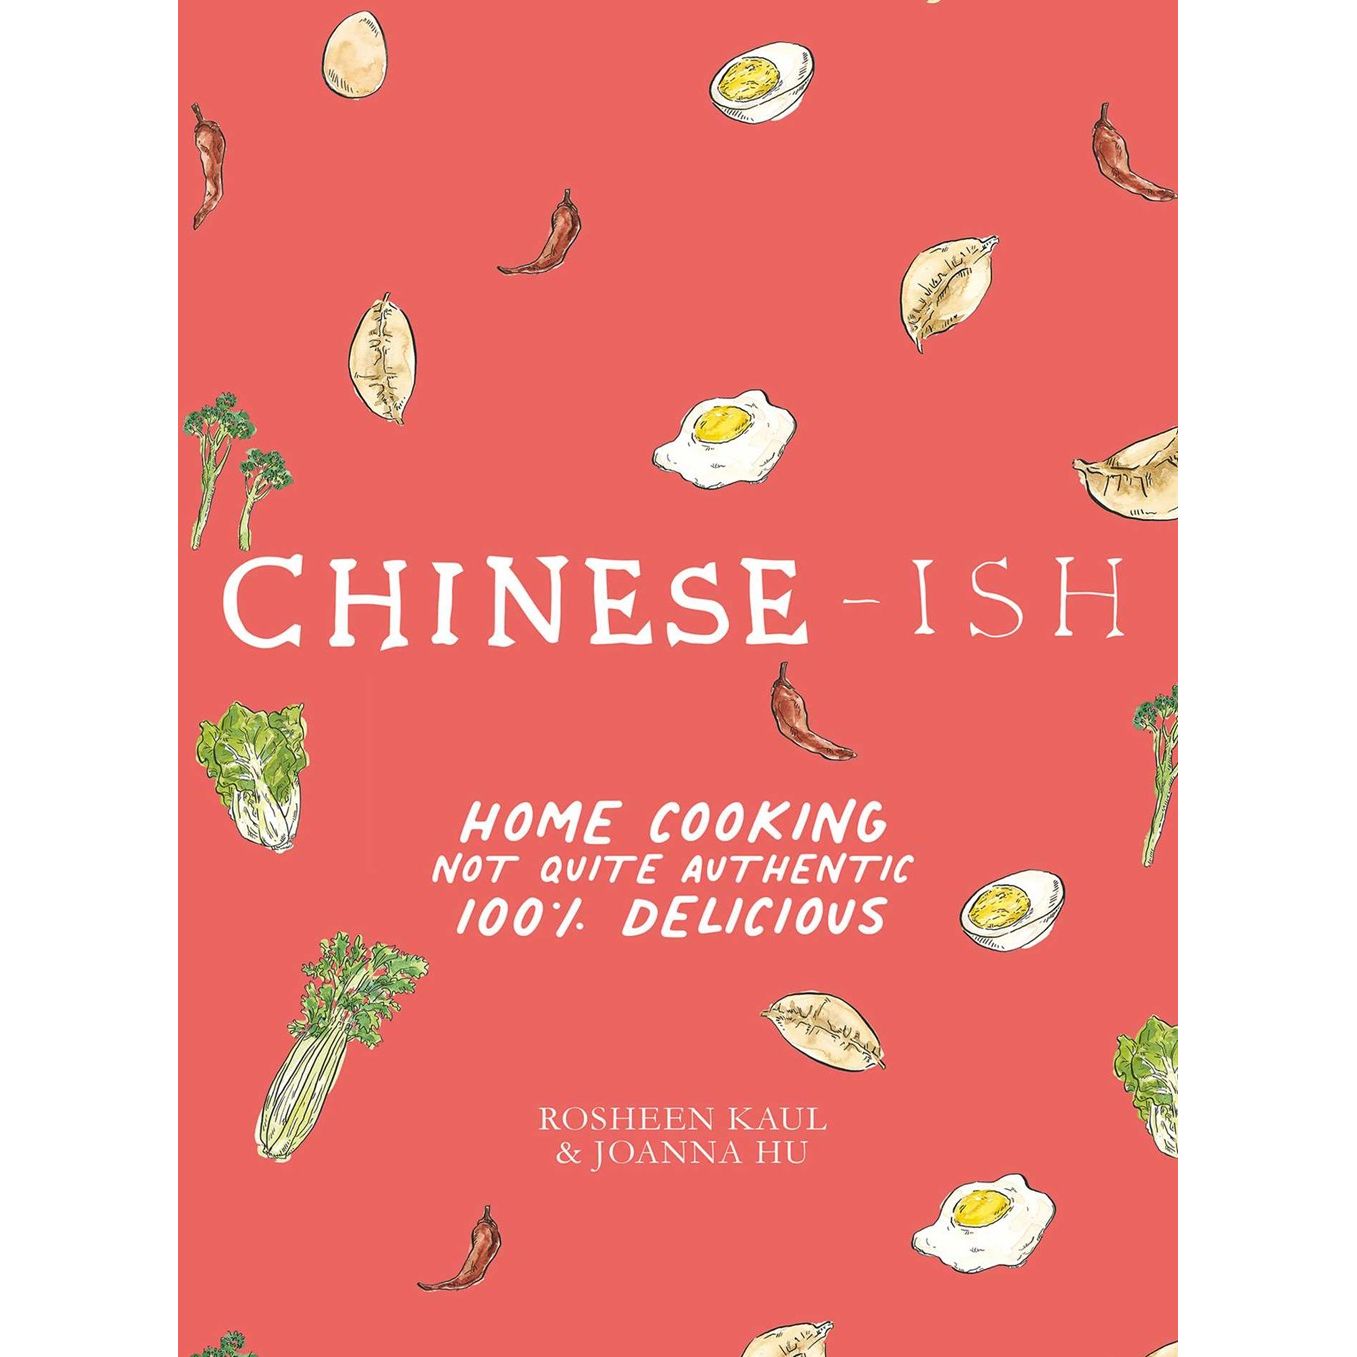 Chinese-Ish (Rosheen Kaul, Joanna Hu)